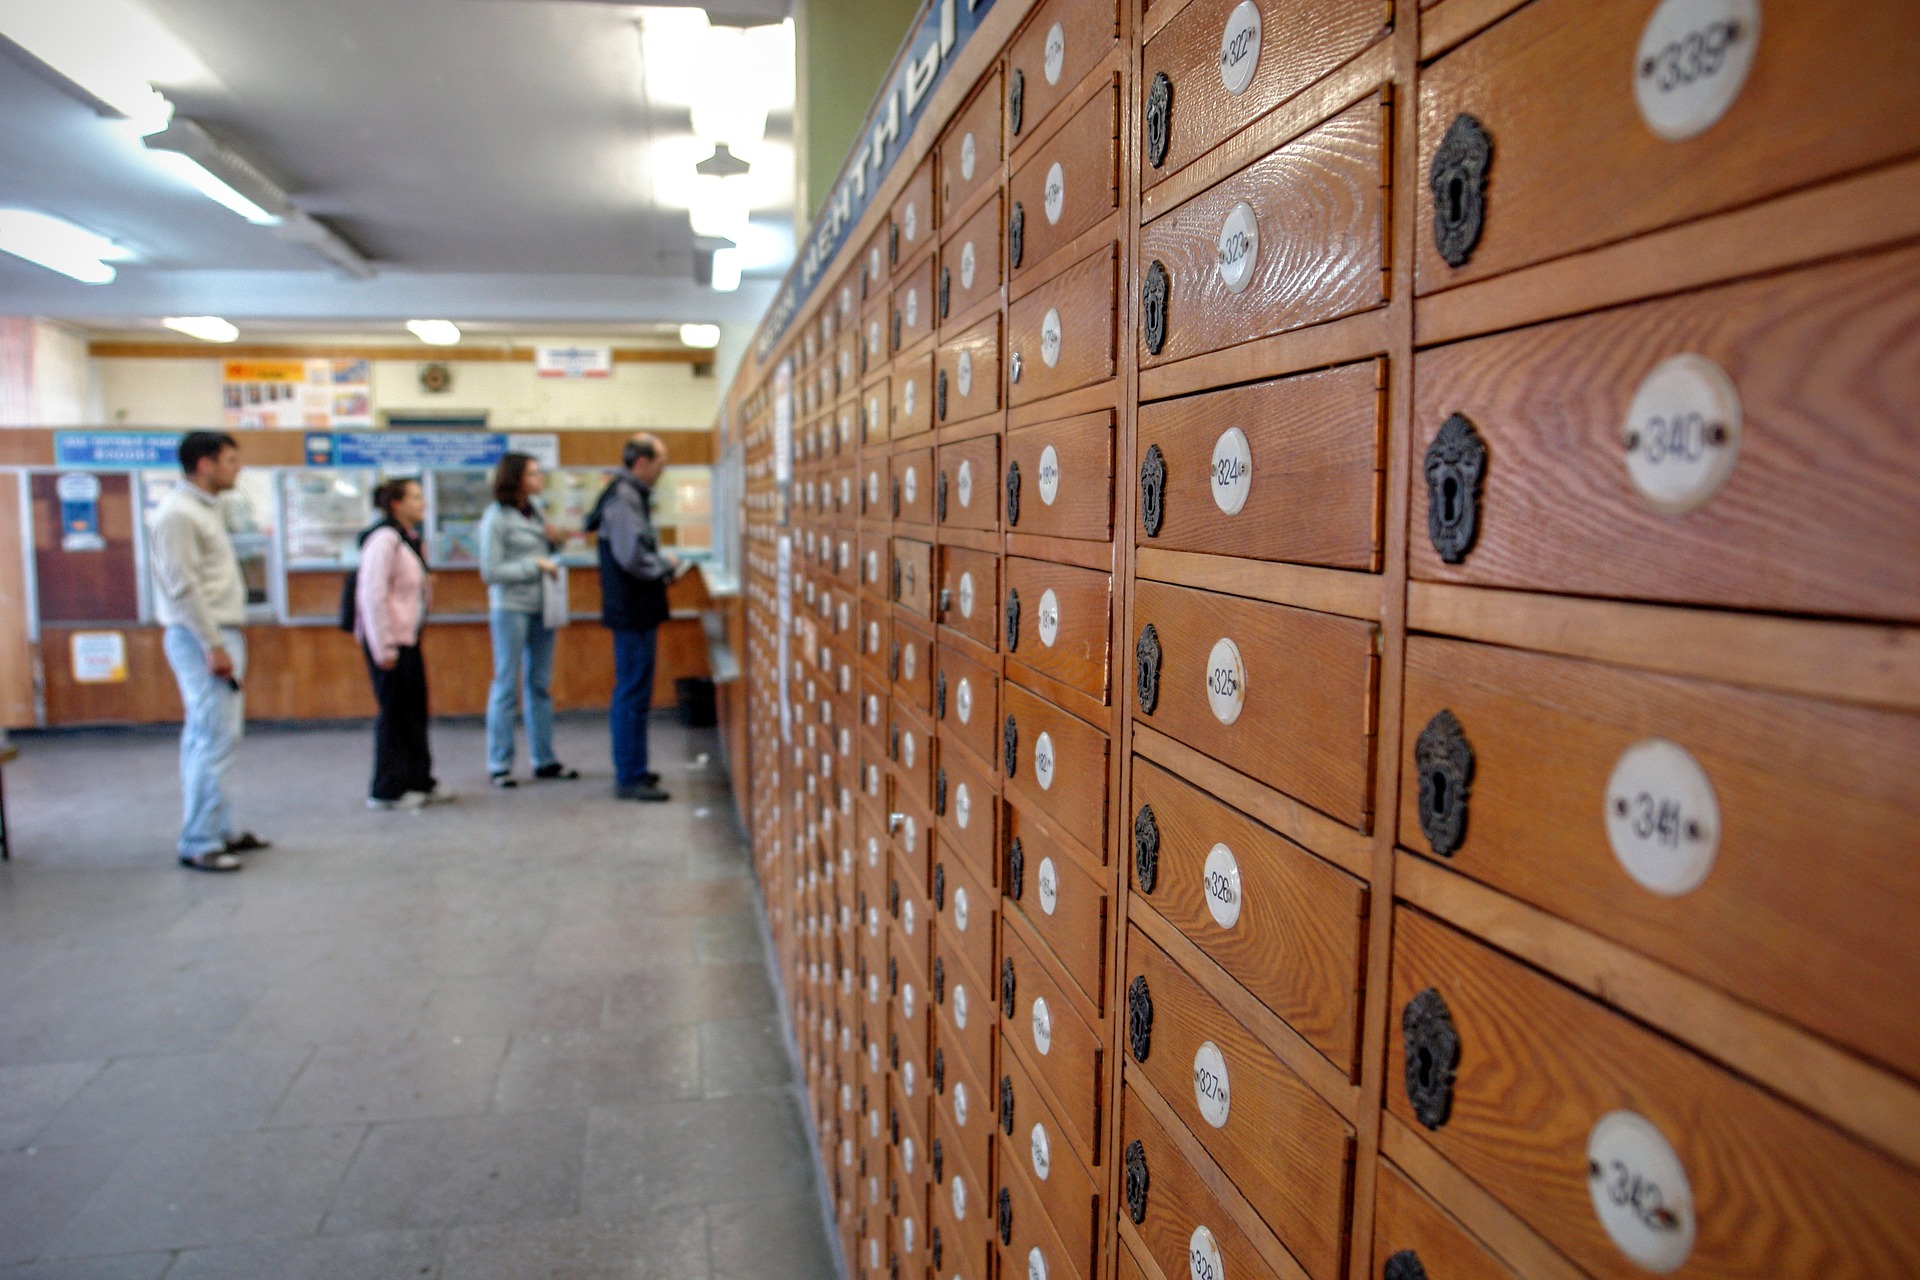 SDI ufficio postale digitale